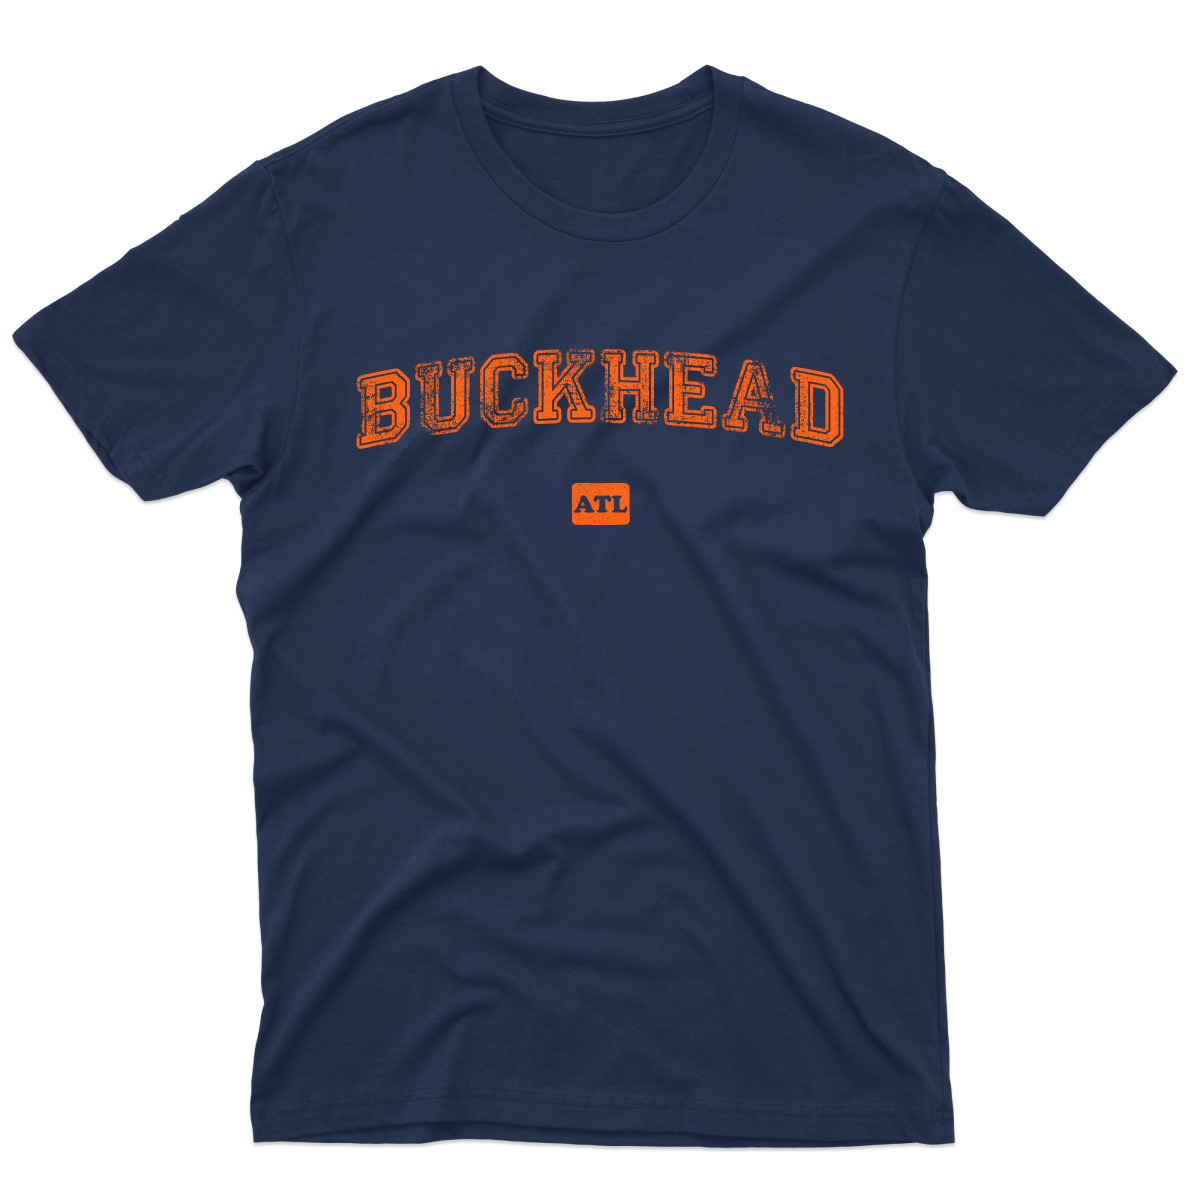 Buckhead ATL Represent Men's T-shirt | Navy